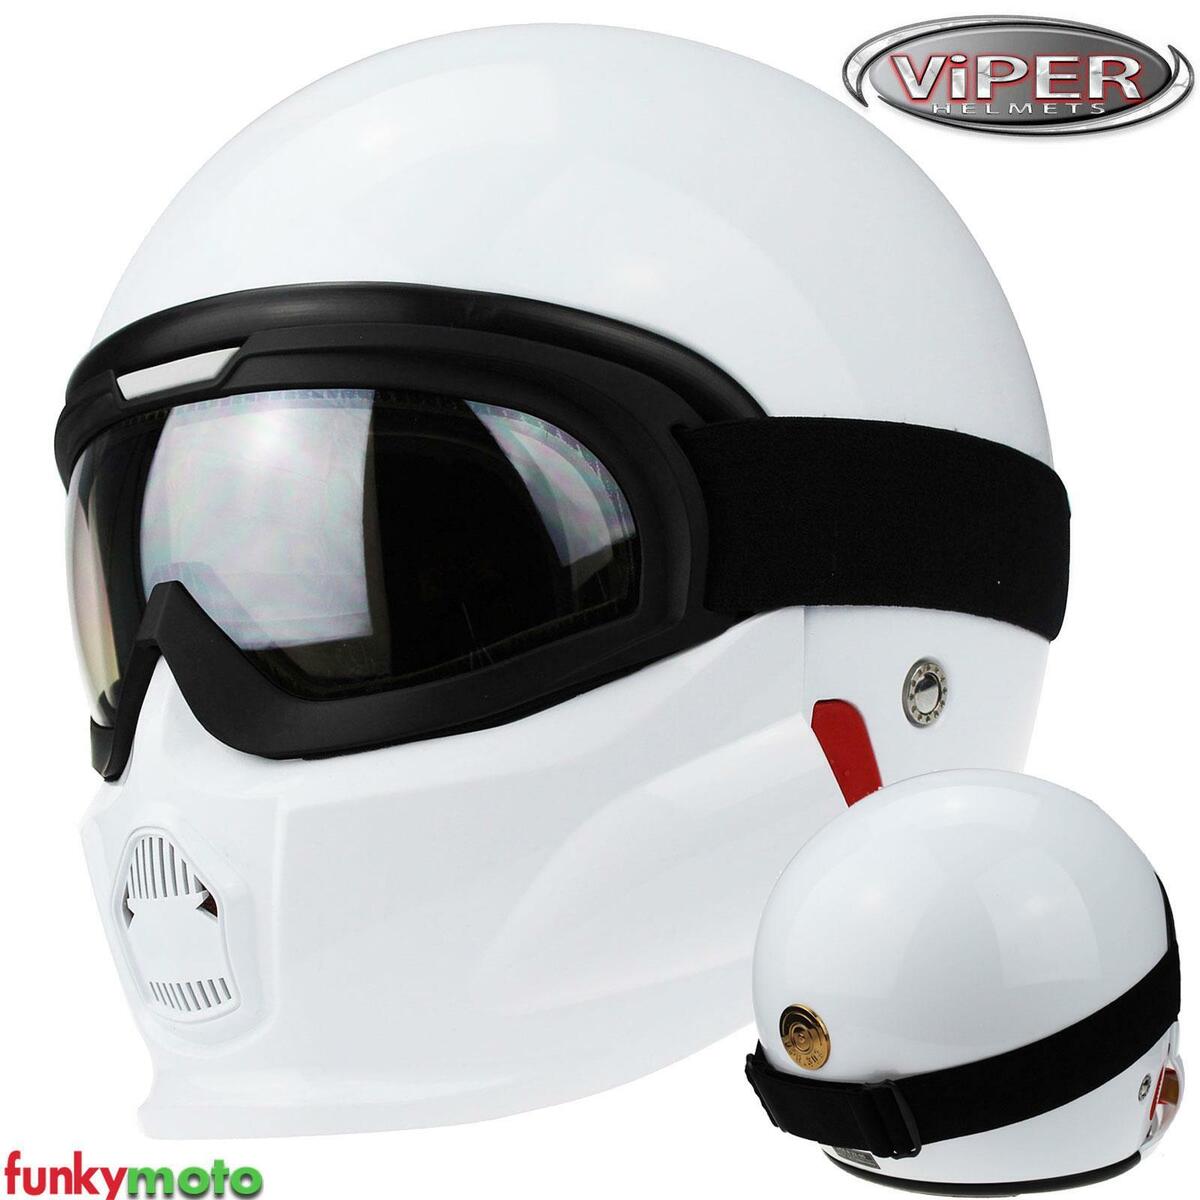 Reductor alabanza de ahora en adelante Viper RS07 casco moto casco jet con máscara y gafas Storm Trooper Casc Jet  Blan | eBay